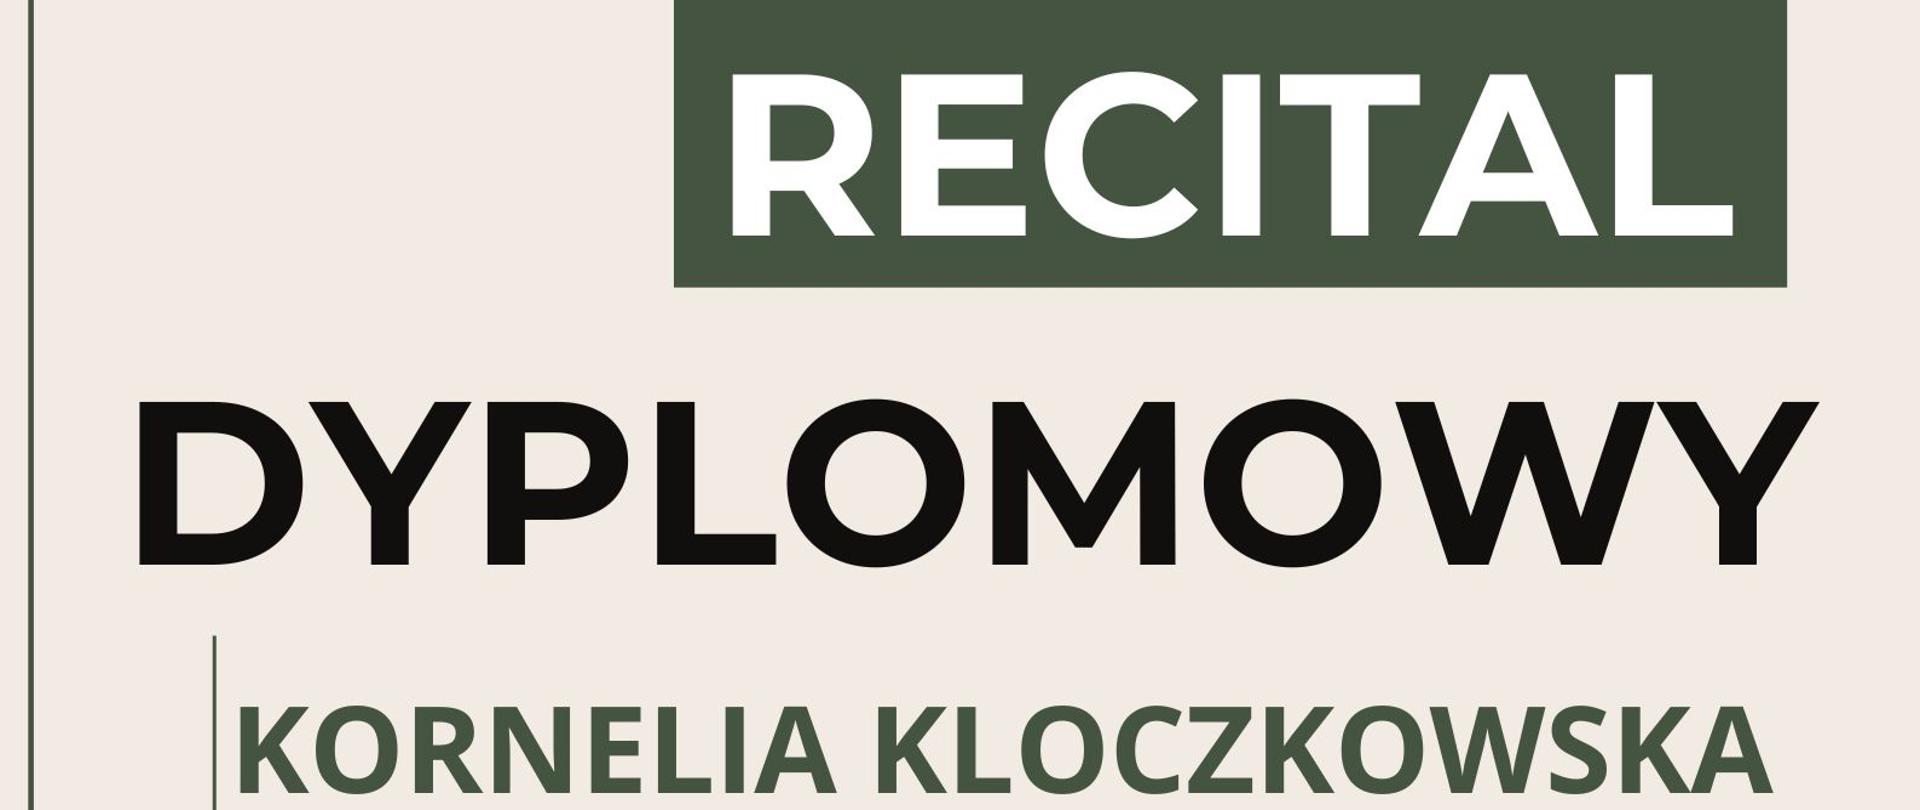 Plakat informacyjny dotyczący Recitalu Dyplomowego Kornelii Kloczkowskiej odbywający się w dniu 1 czerwca 2023 r. o godz. 15.00.